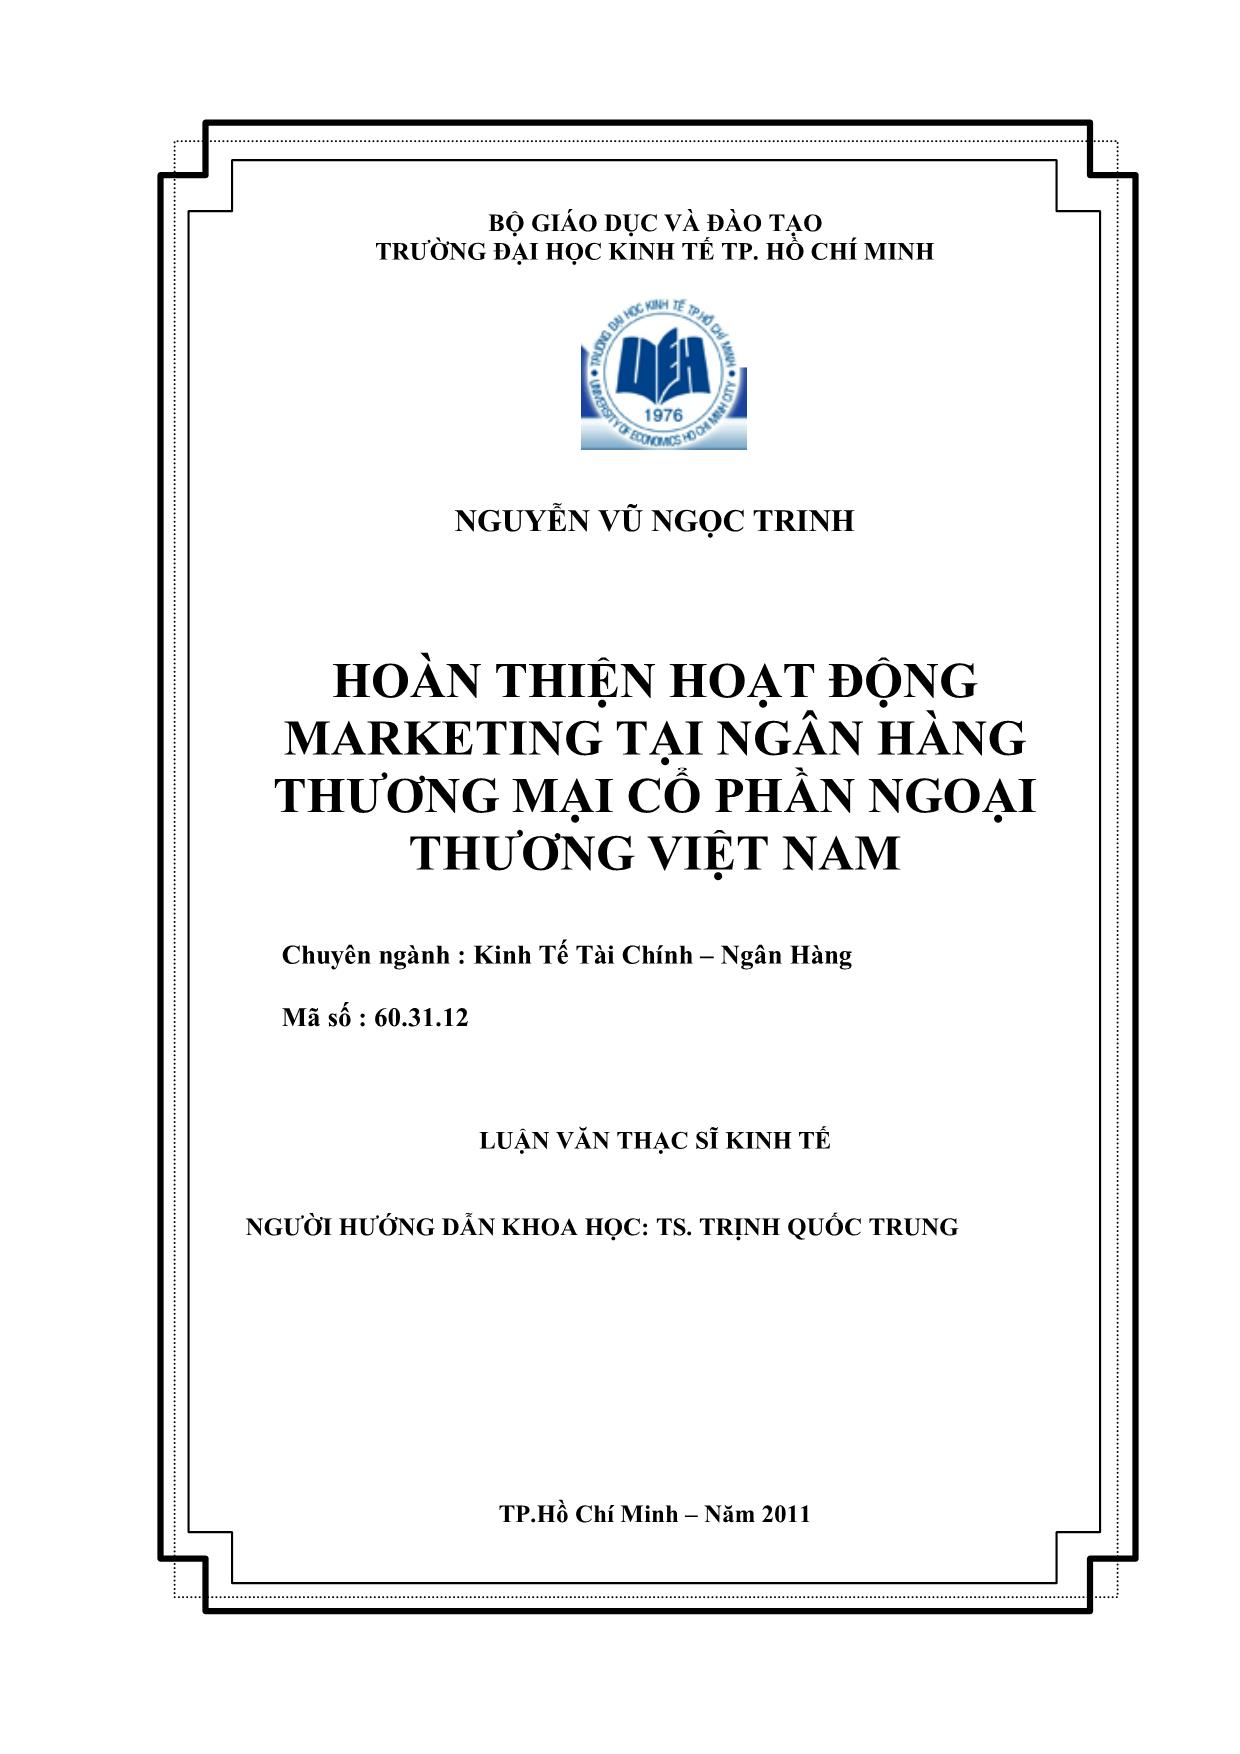 Luận văn Hoàn thiện hoạt động Marketing tại ngân hàng thương mại cổ phần ngoại thương Việt Nam trang 2